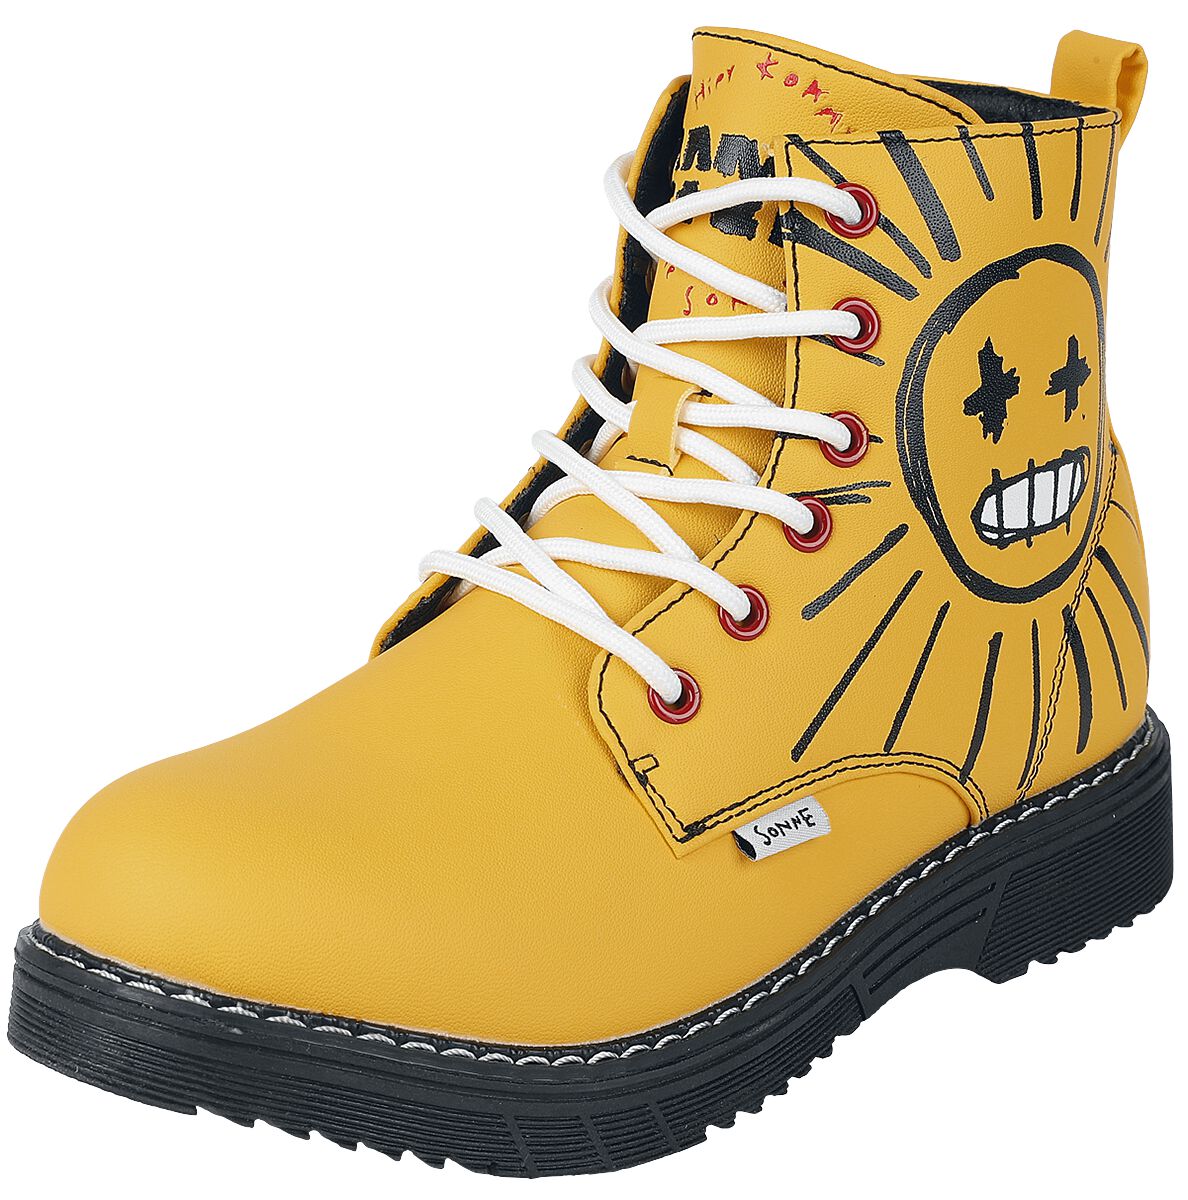 Rammstein Boot - EU37 bis EU41 - für Damen - Größe EU37 - gelb  - Lizenziertes Merchandise!